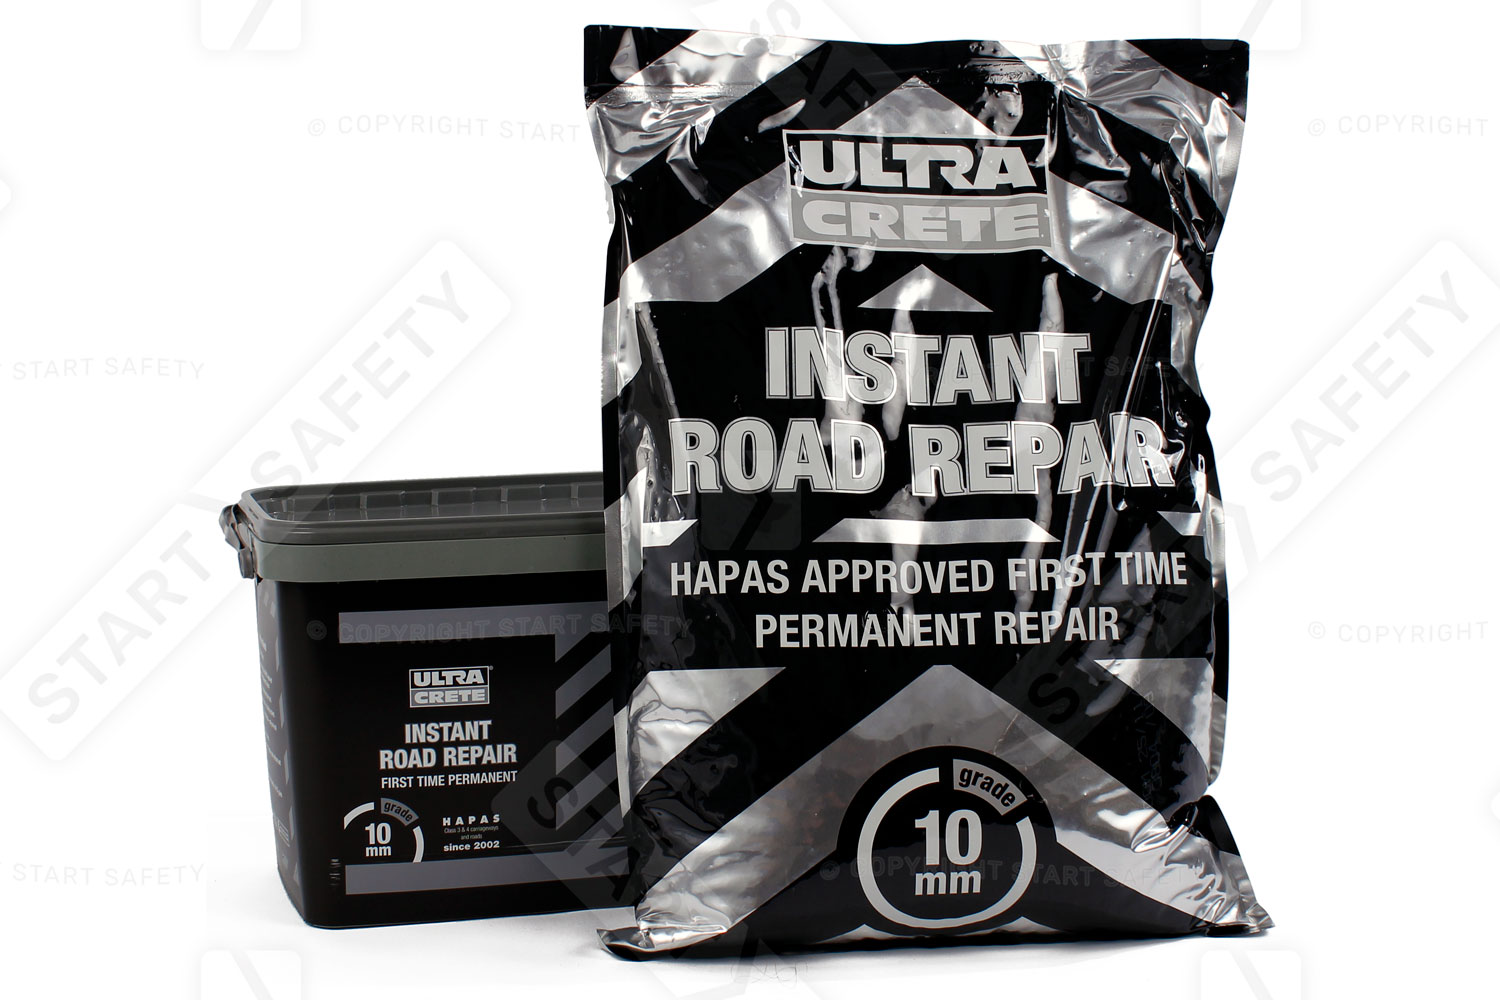 Instant Road Repair in 10mm